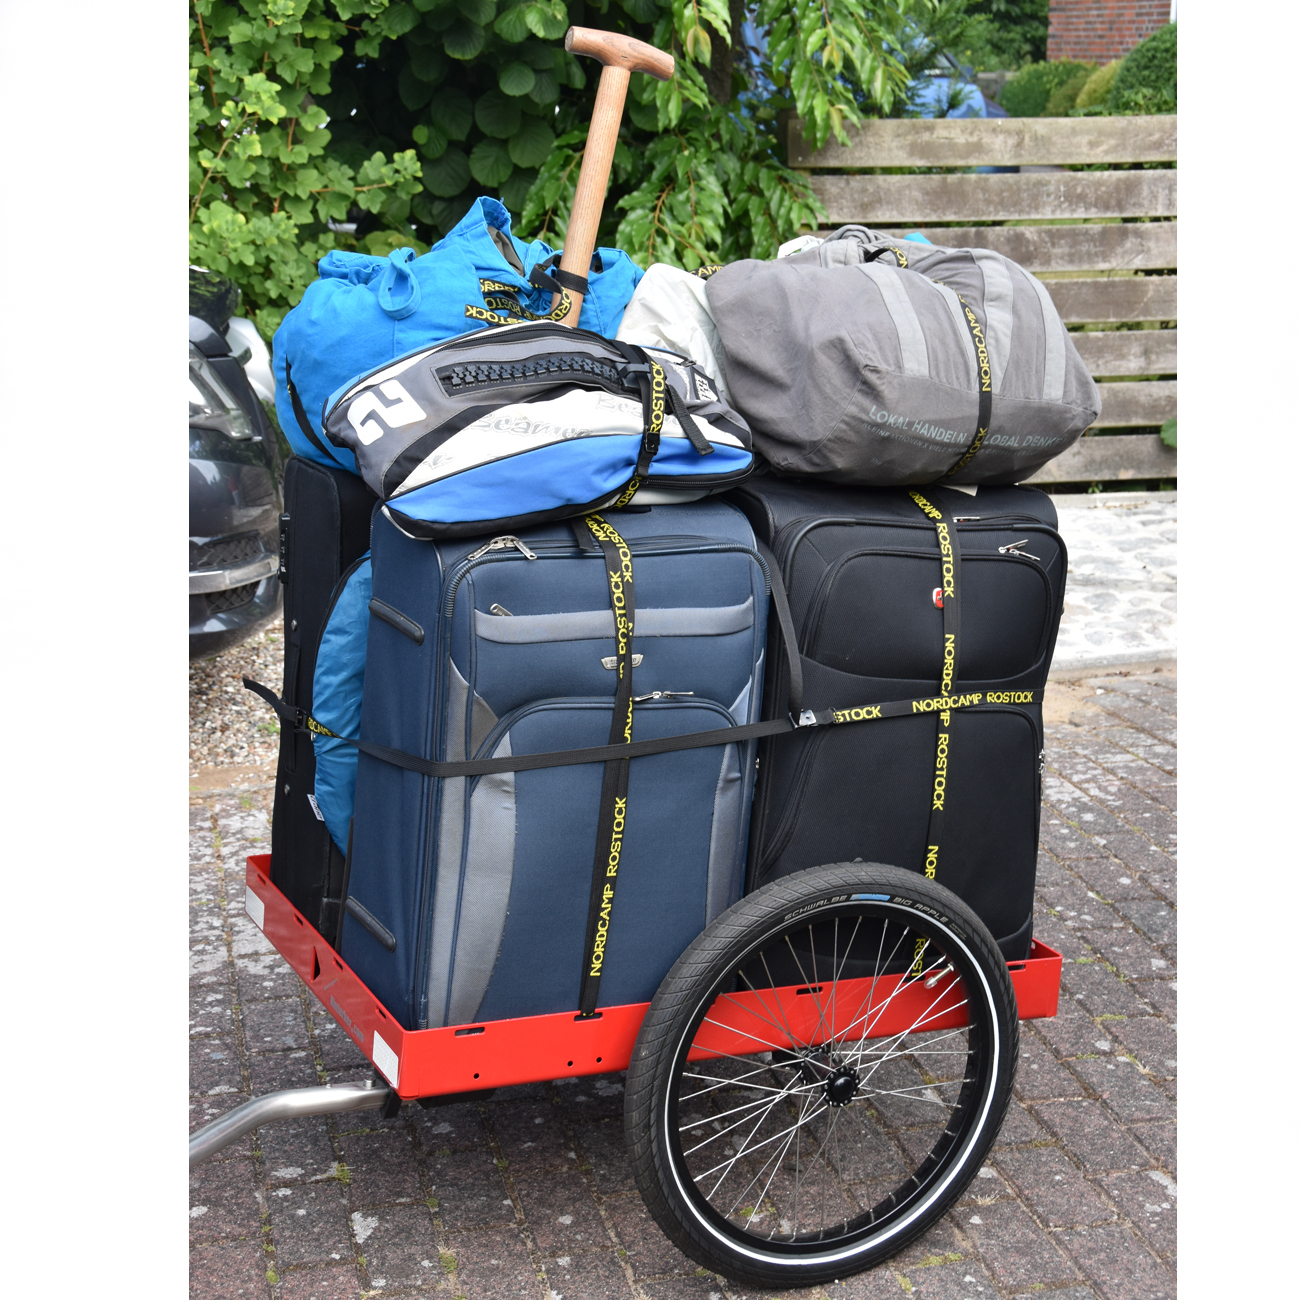 Reisegepäck und Koffer werden mit einem Fahrradanhänger transportiert